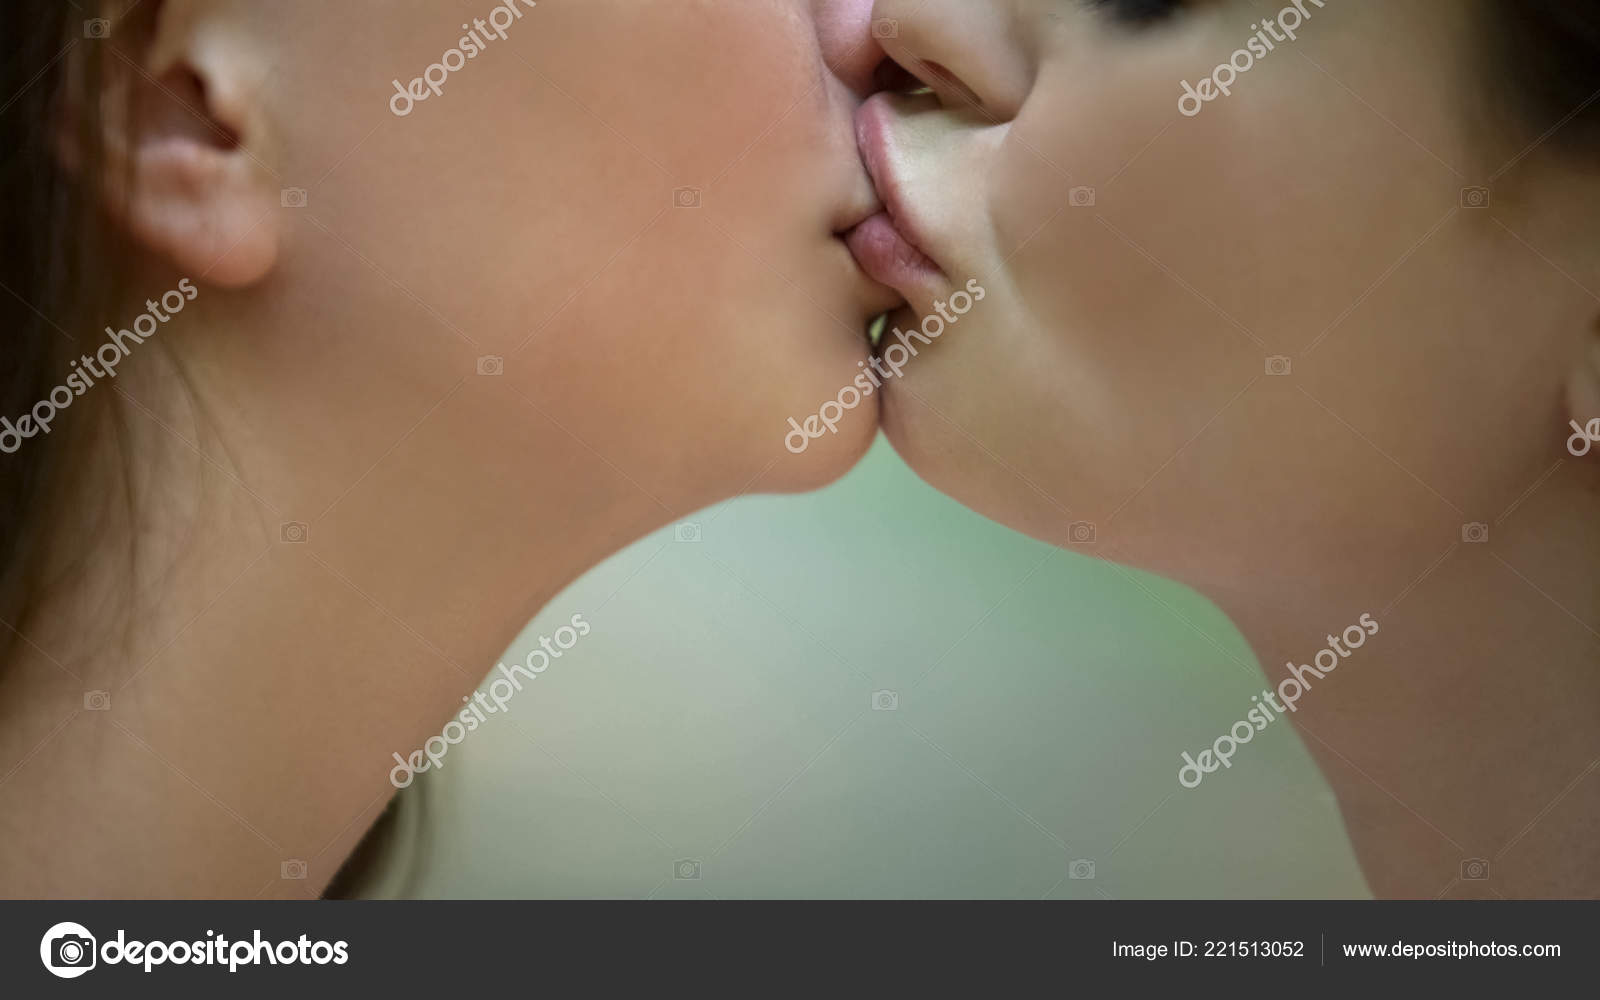 Sexy Lesbians Kiss